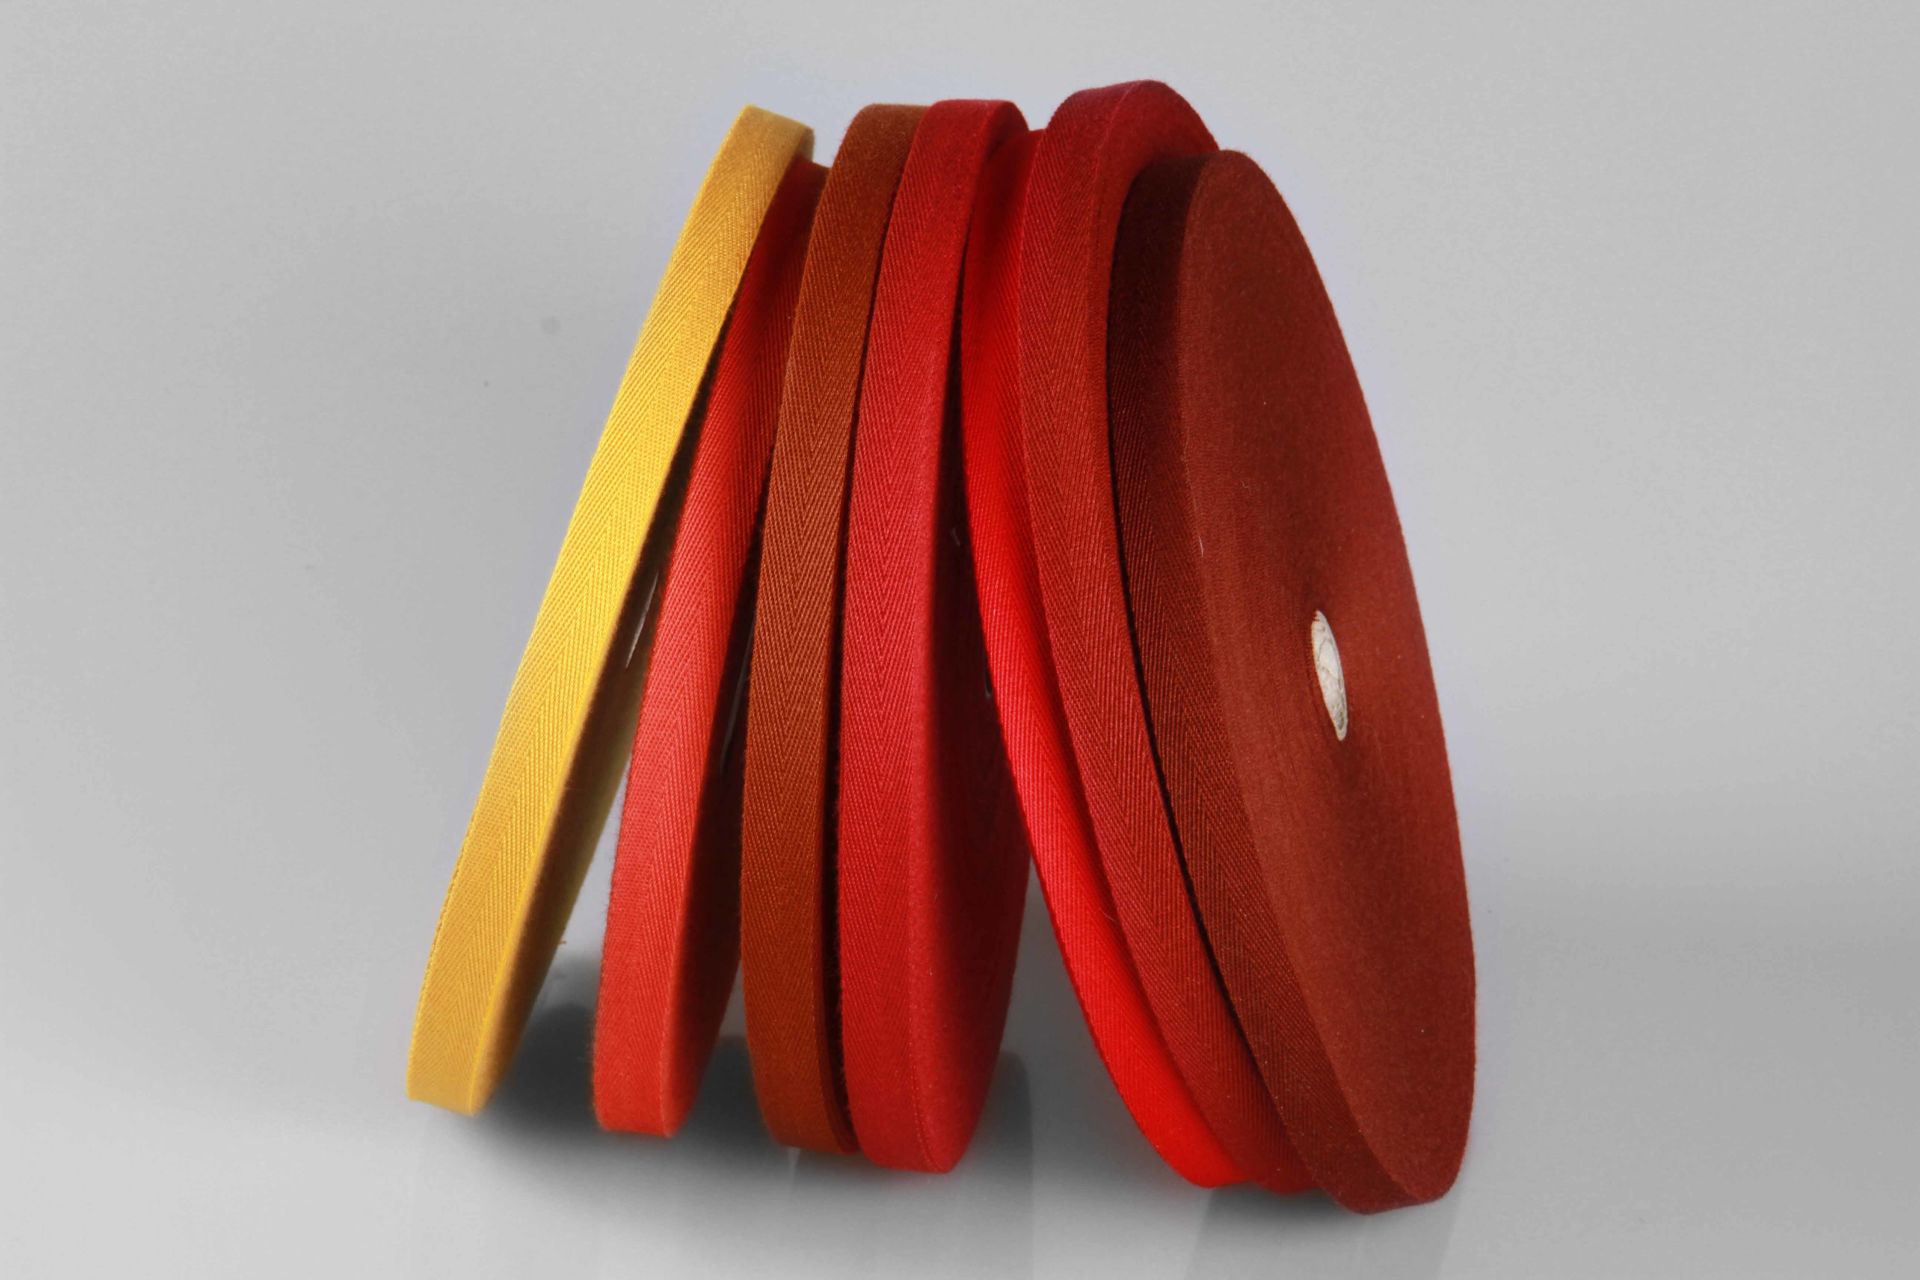 Einfassband  -  100 m  -  weiche Bandware  -  Köperband aus PAC  -  15 mm breit  -  Rottöne-Auswahl